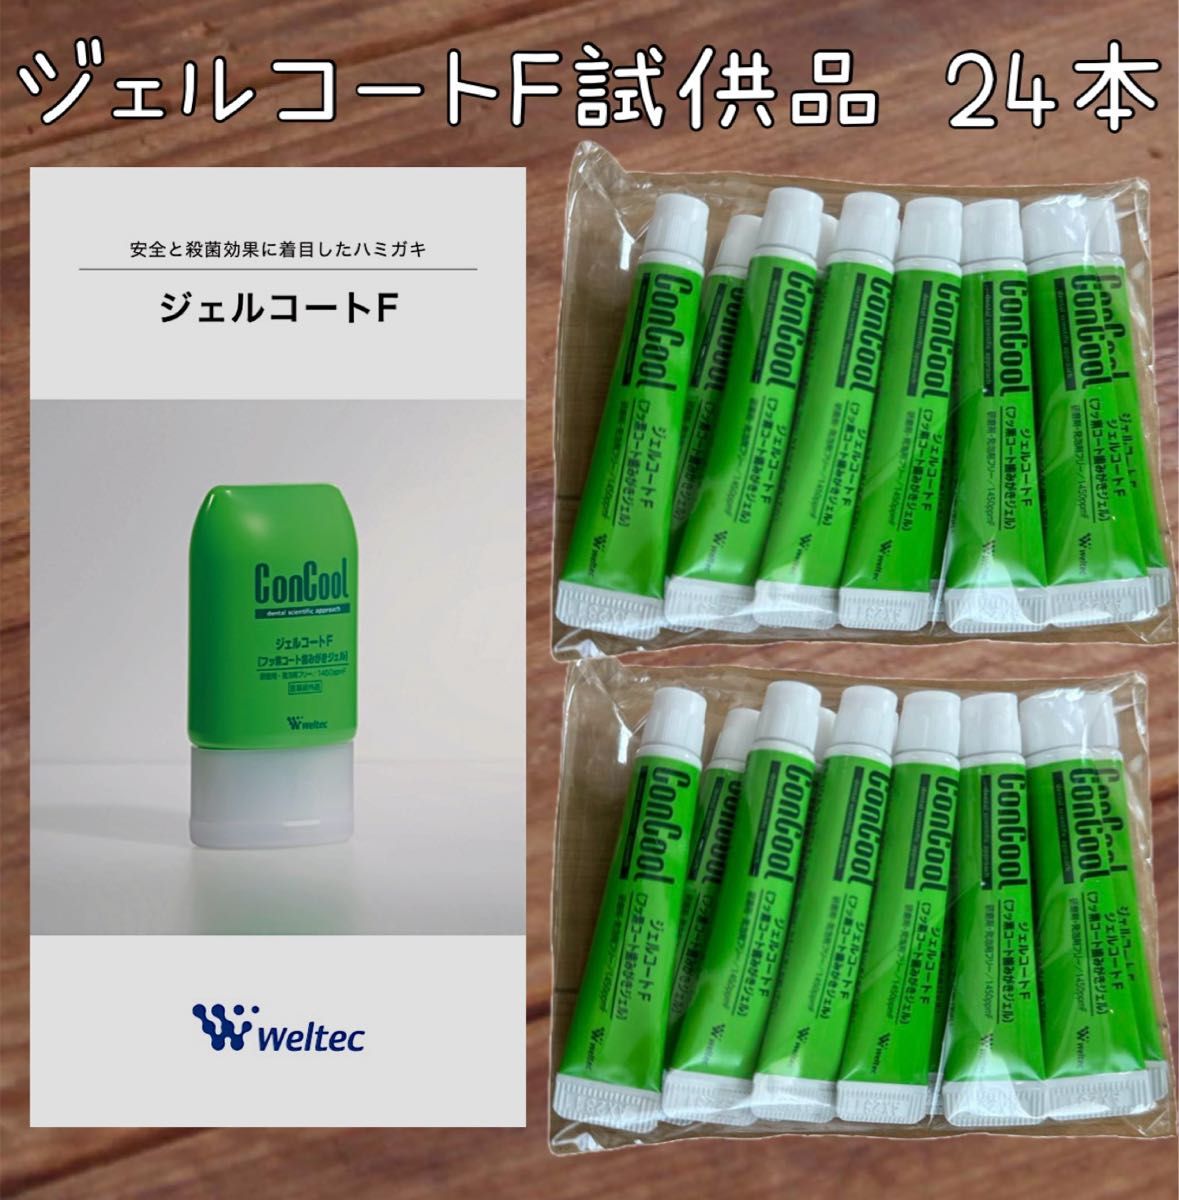 ウエルテック ジェルコートF 試供品24本 コンクール   歯磨き粉 通常品の1.3倍の量！